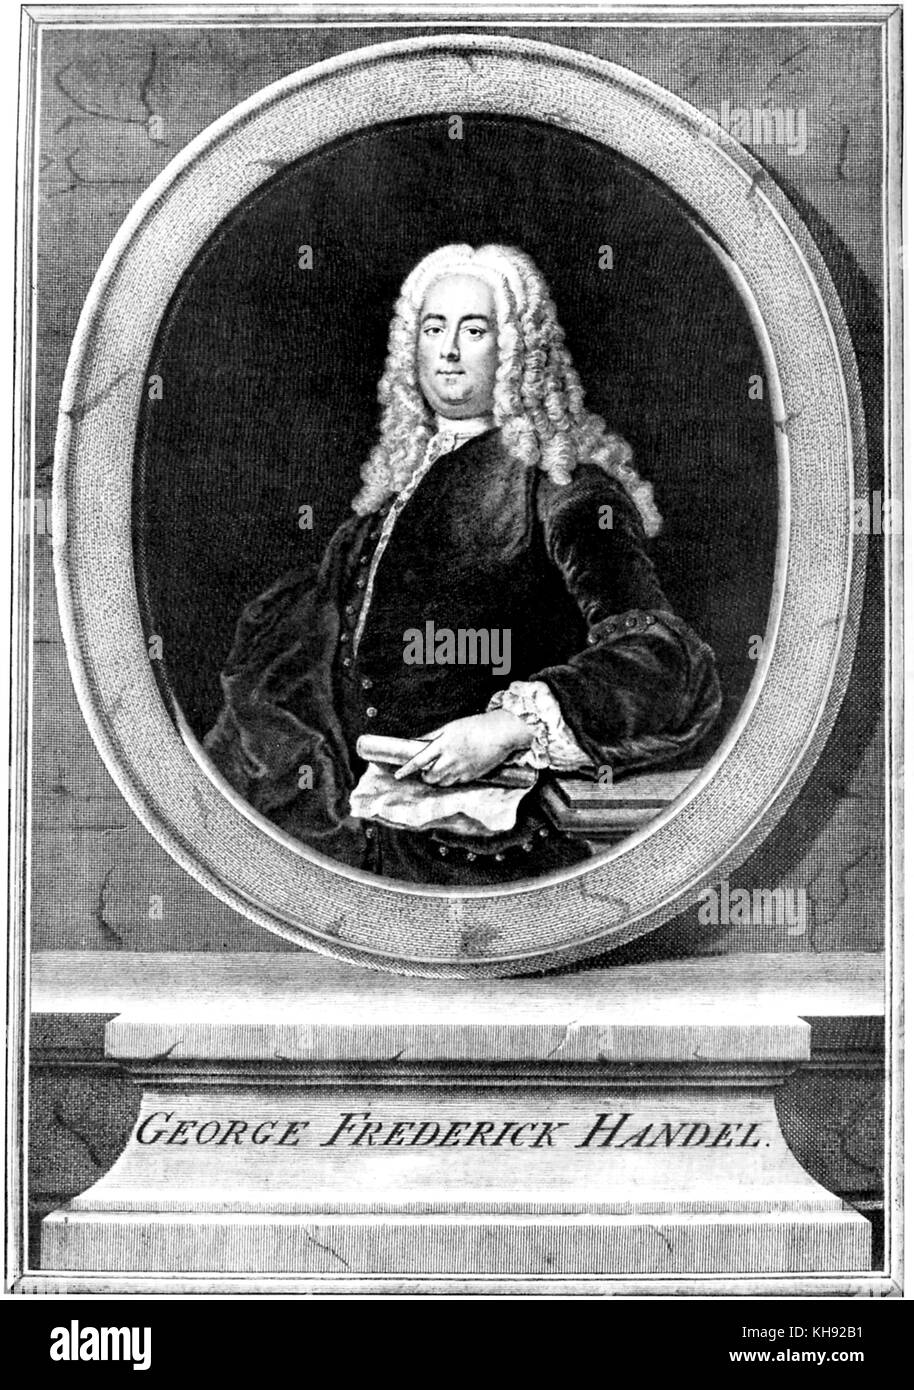 George Frederic Handel. Ritratto Di artista sconosciuto. Compositore tedesco-inglese, 23 Febbraio 1685 - 14 aprile 1759. Foto Stock